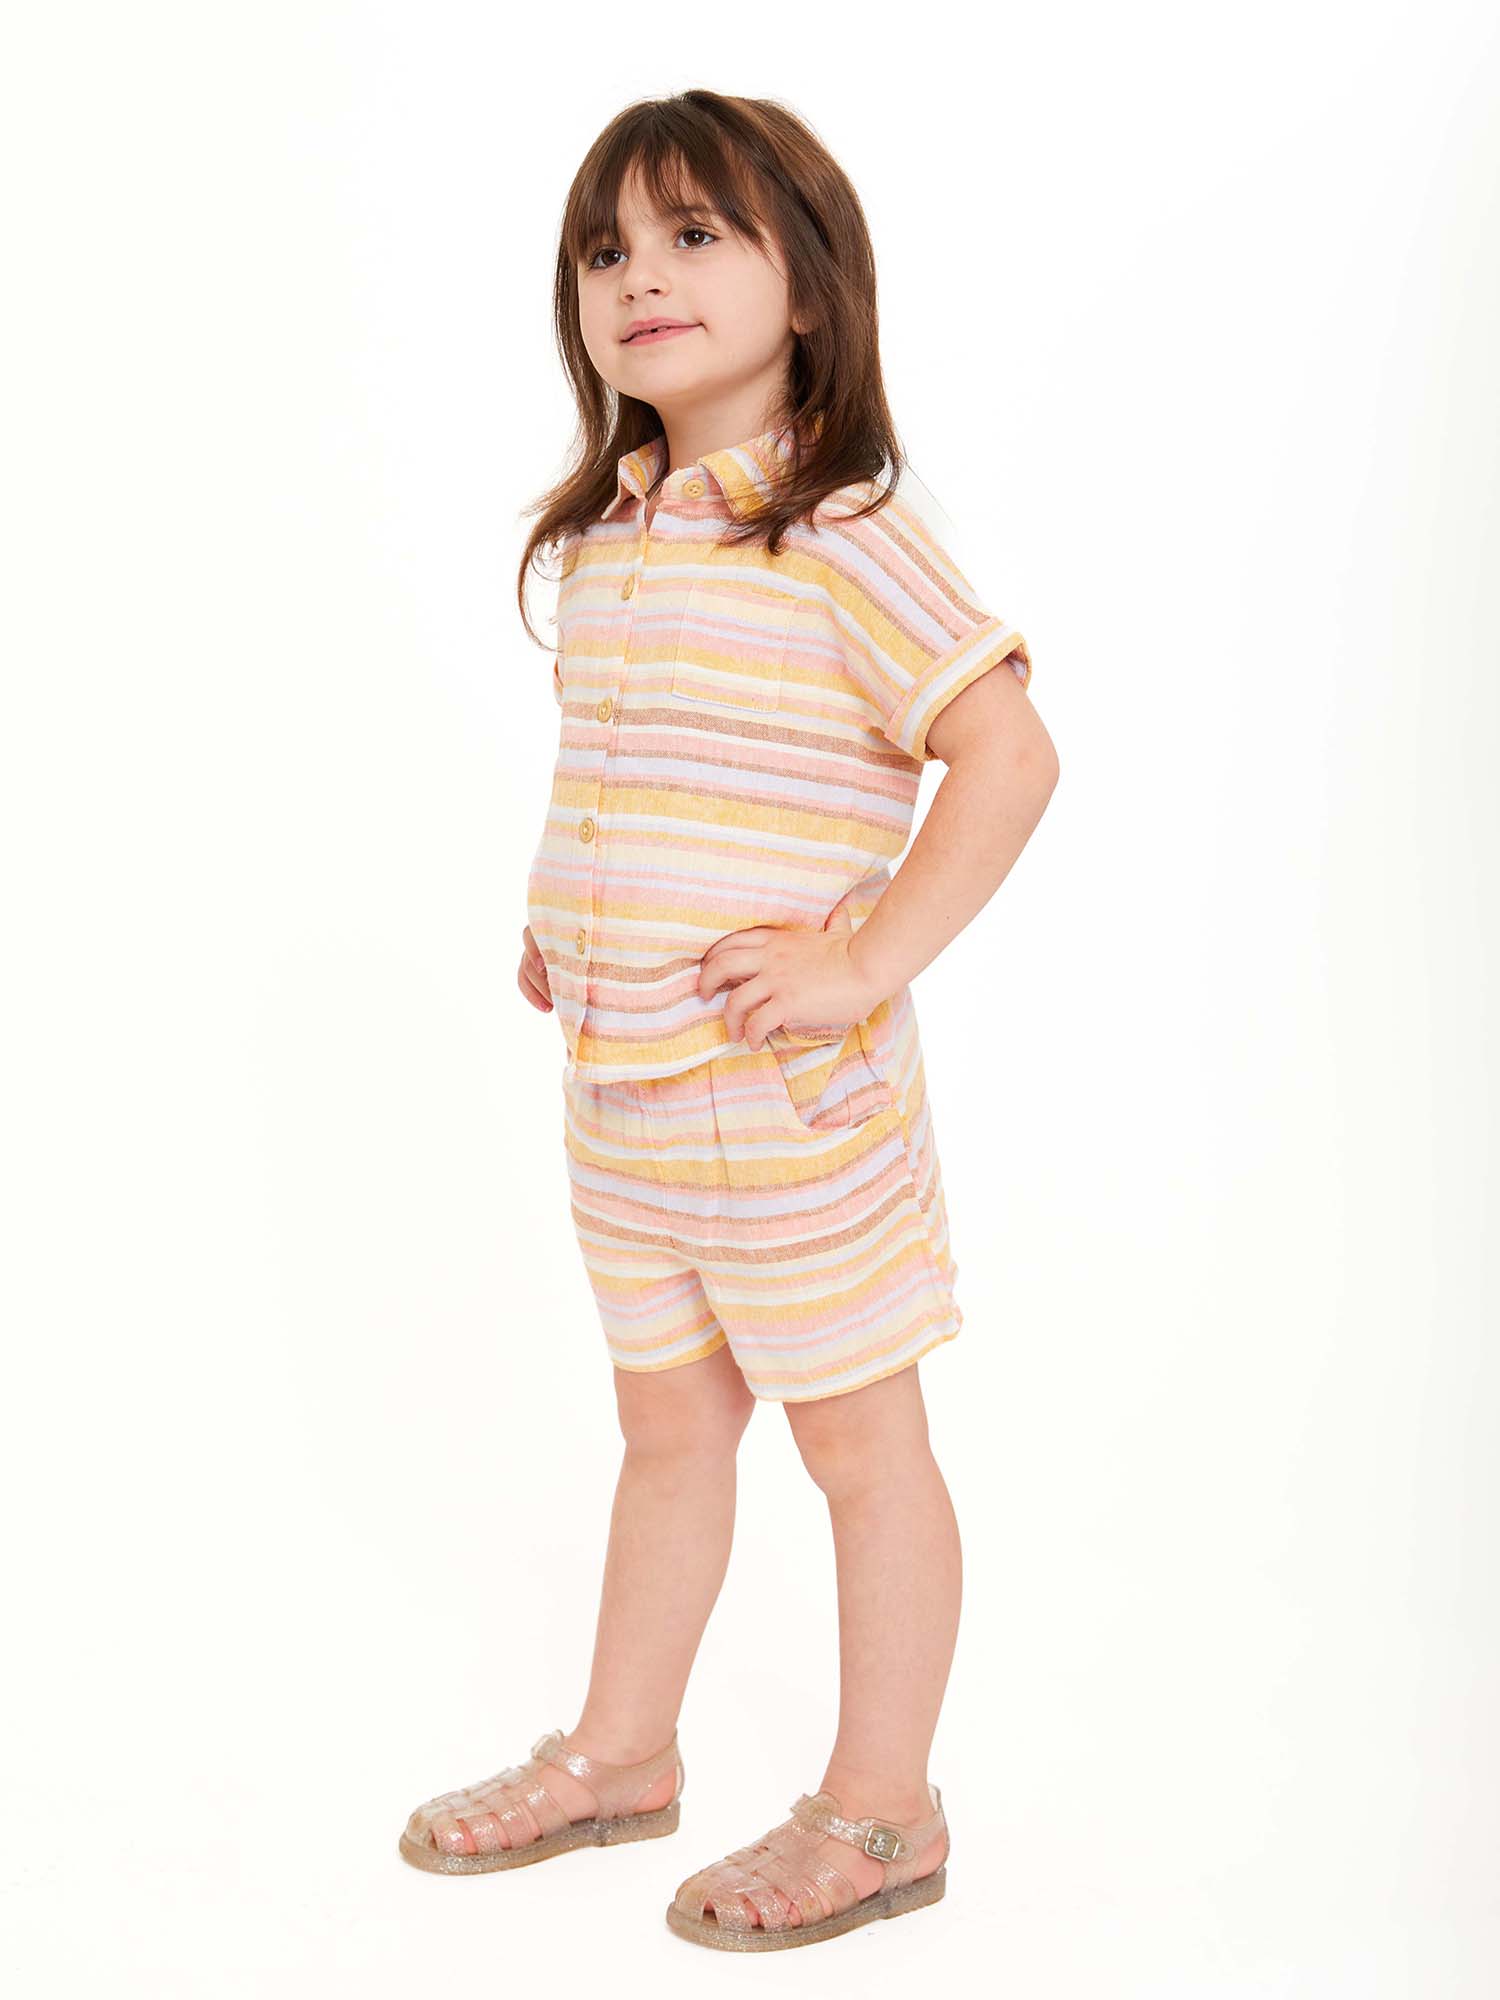 Wonder Nation Toddler Girls Elevated Shirt and Shorts Set, Sizes 12M-5T - image 5 of 9